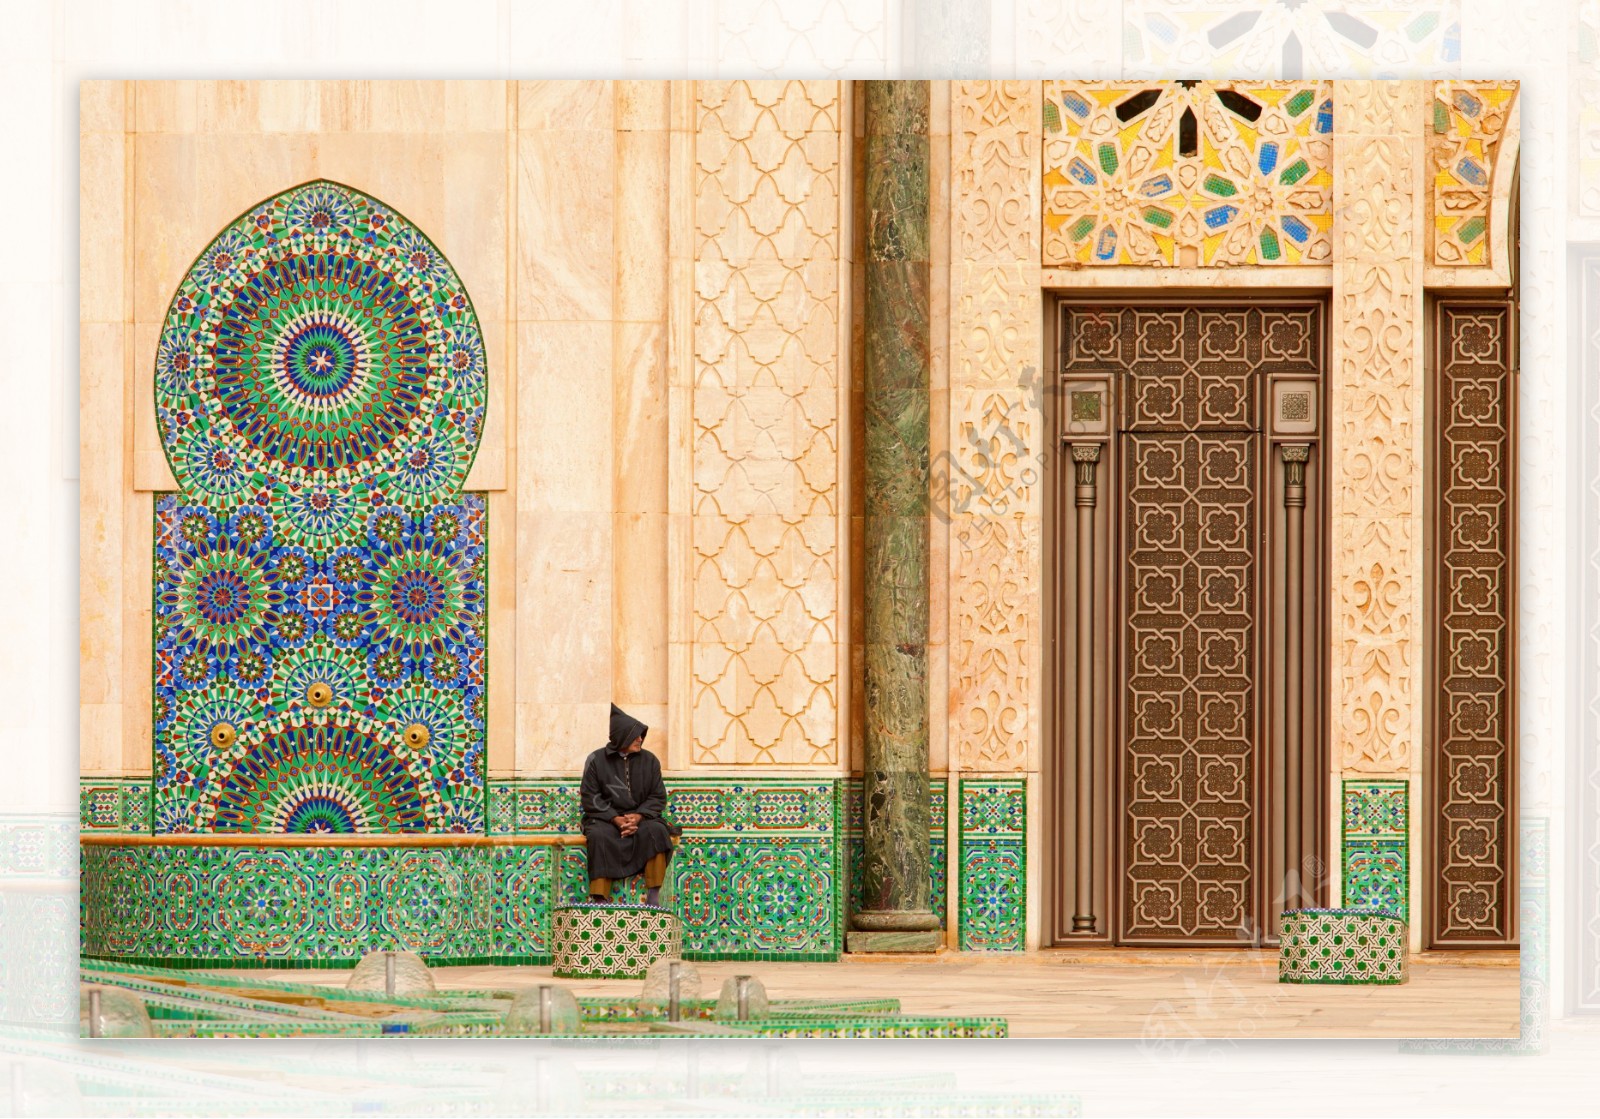 哈桑二世清真寺风景